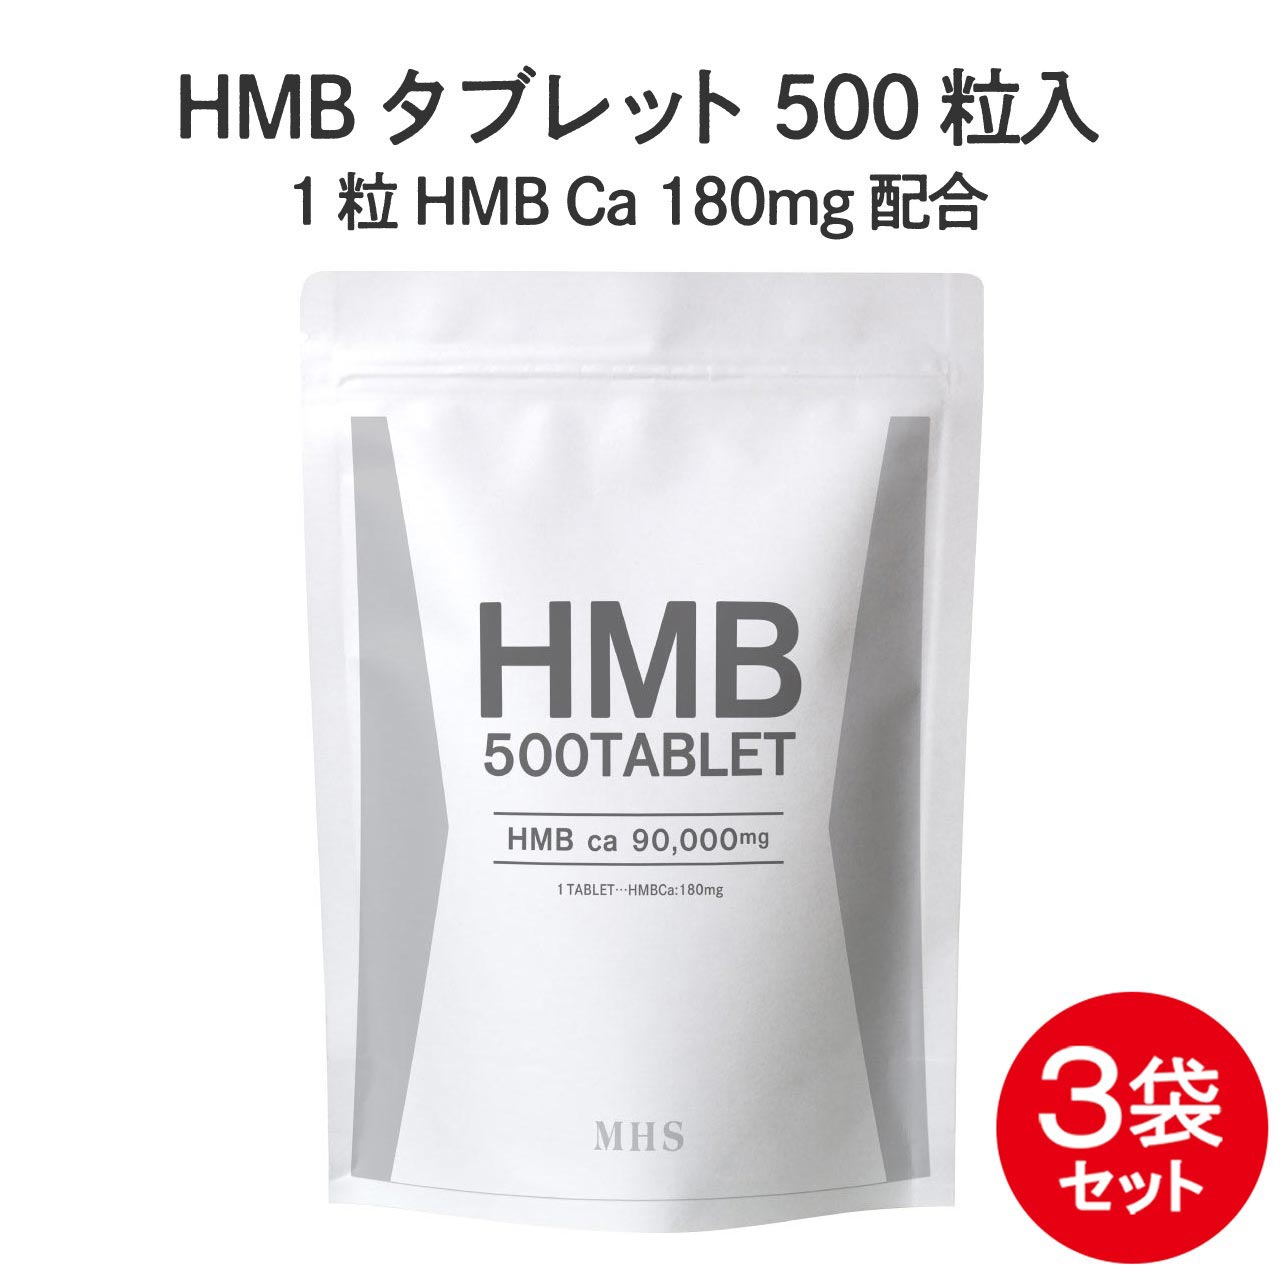 HMB サプリ タブレット 3袋 セット 150